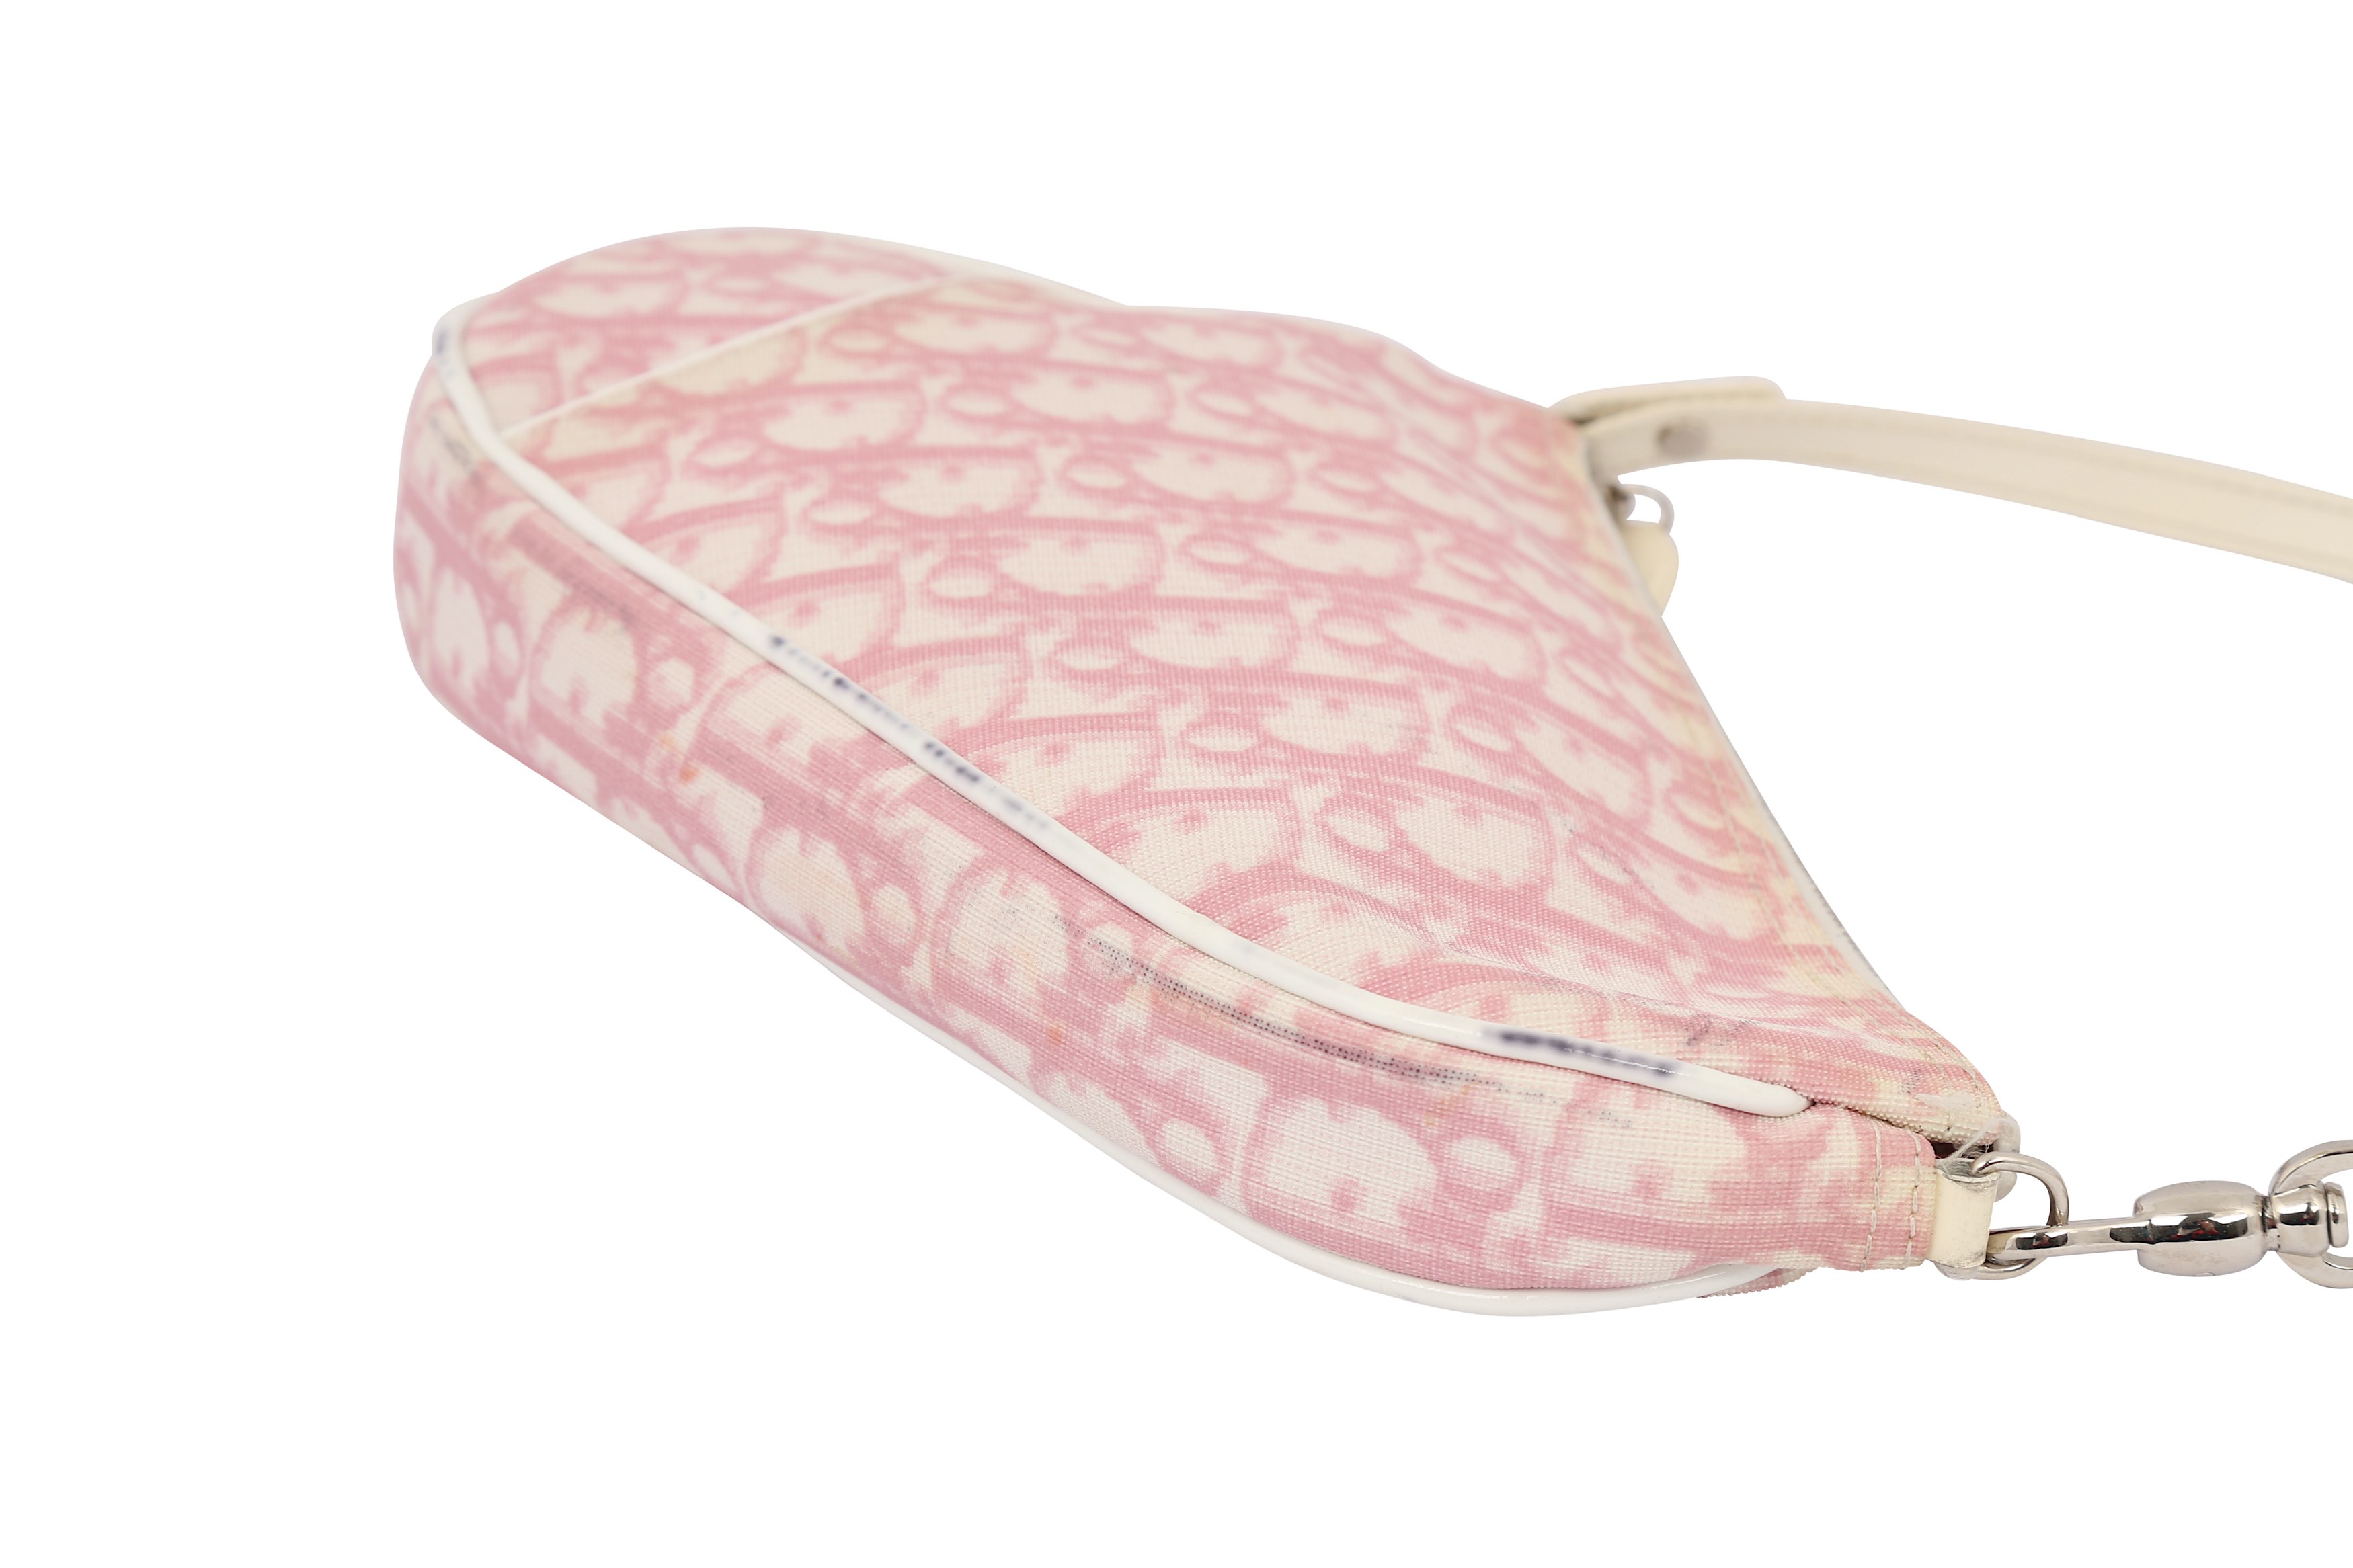 Christian Dior Pink Diorissimo Saddle Bag - Image 3 of 6